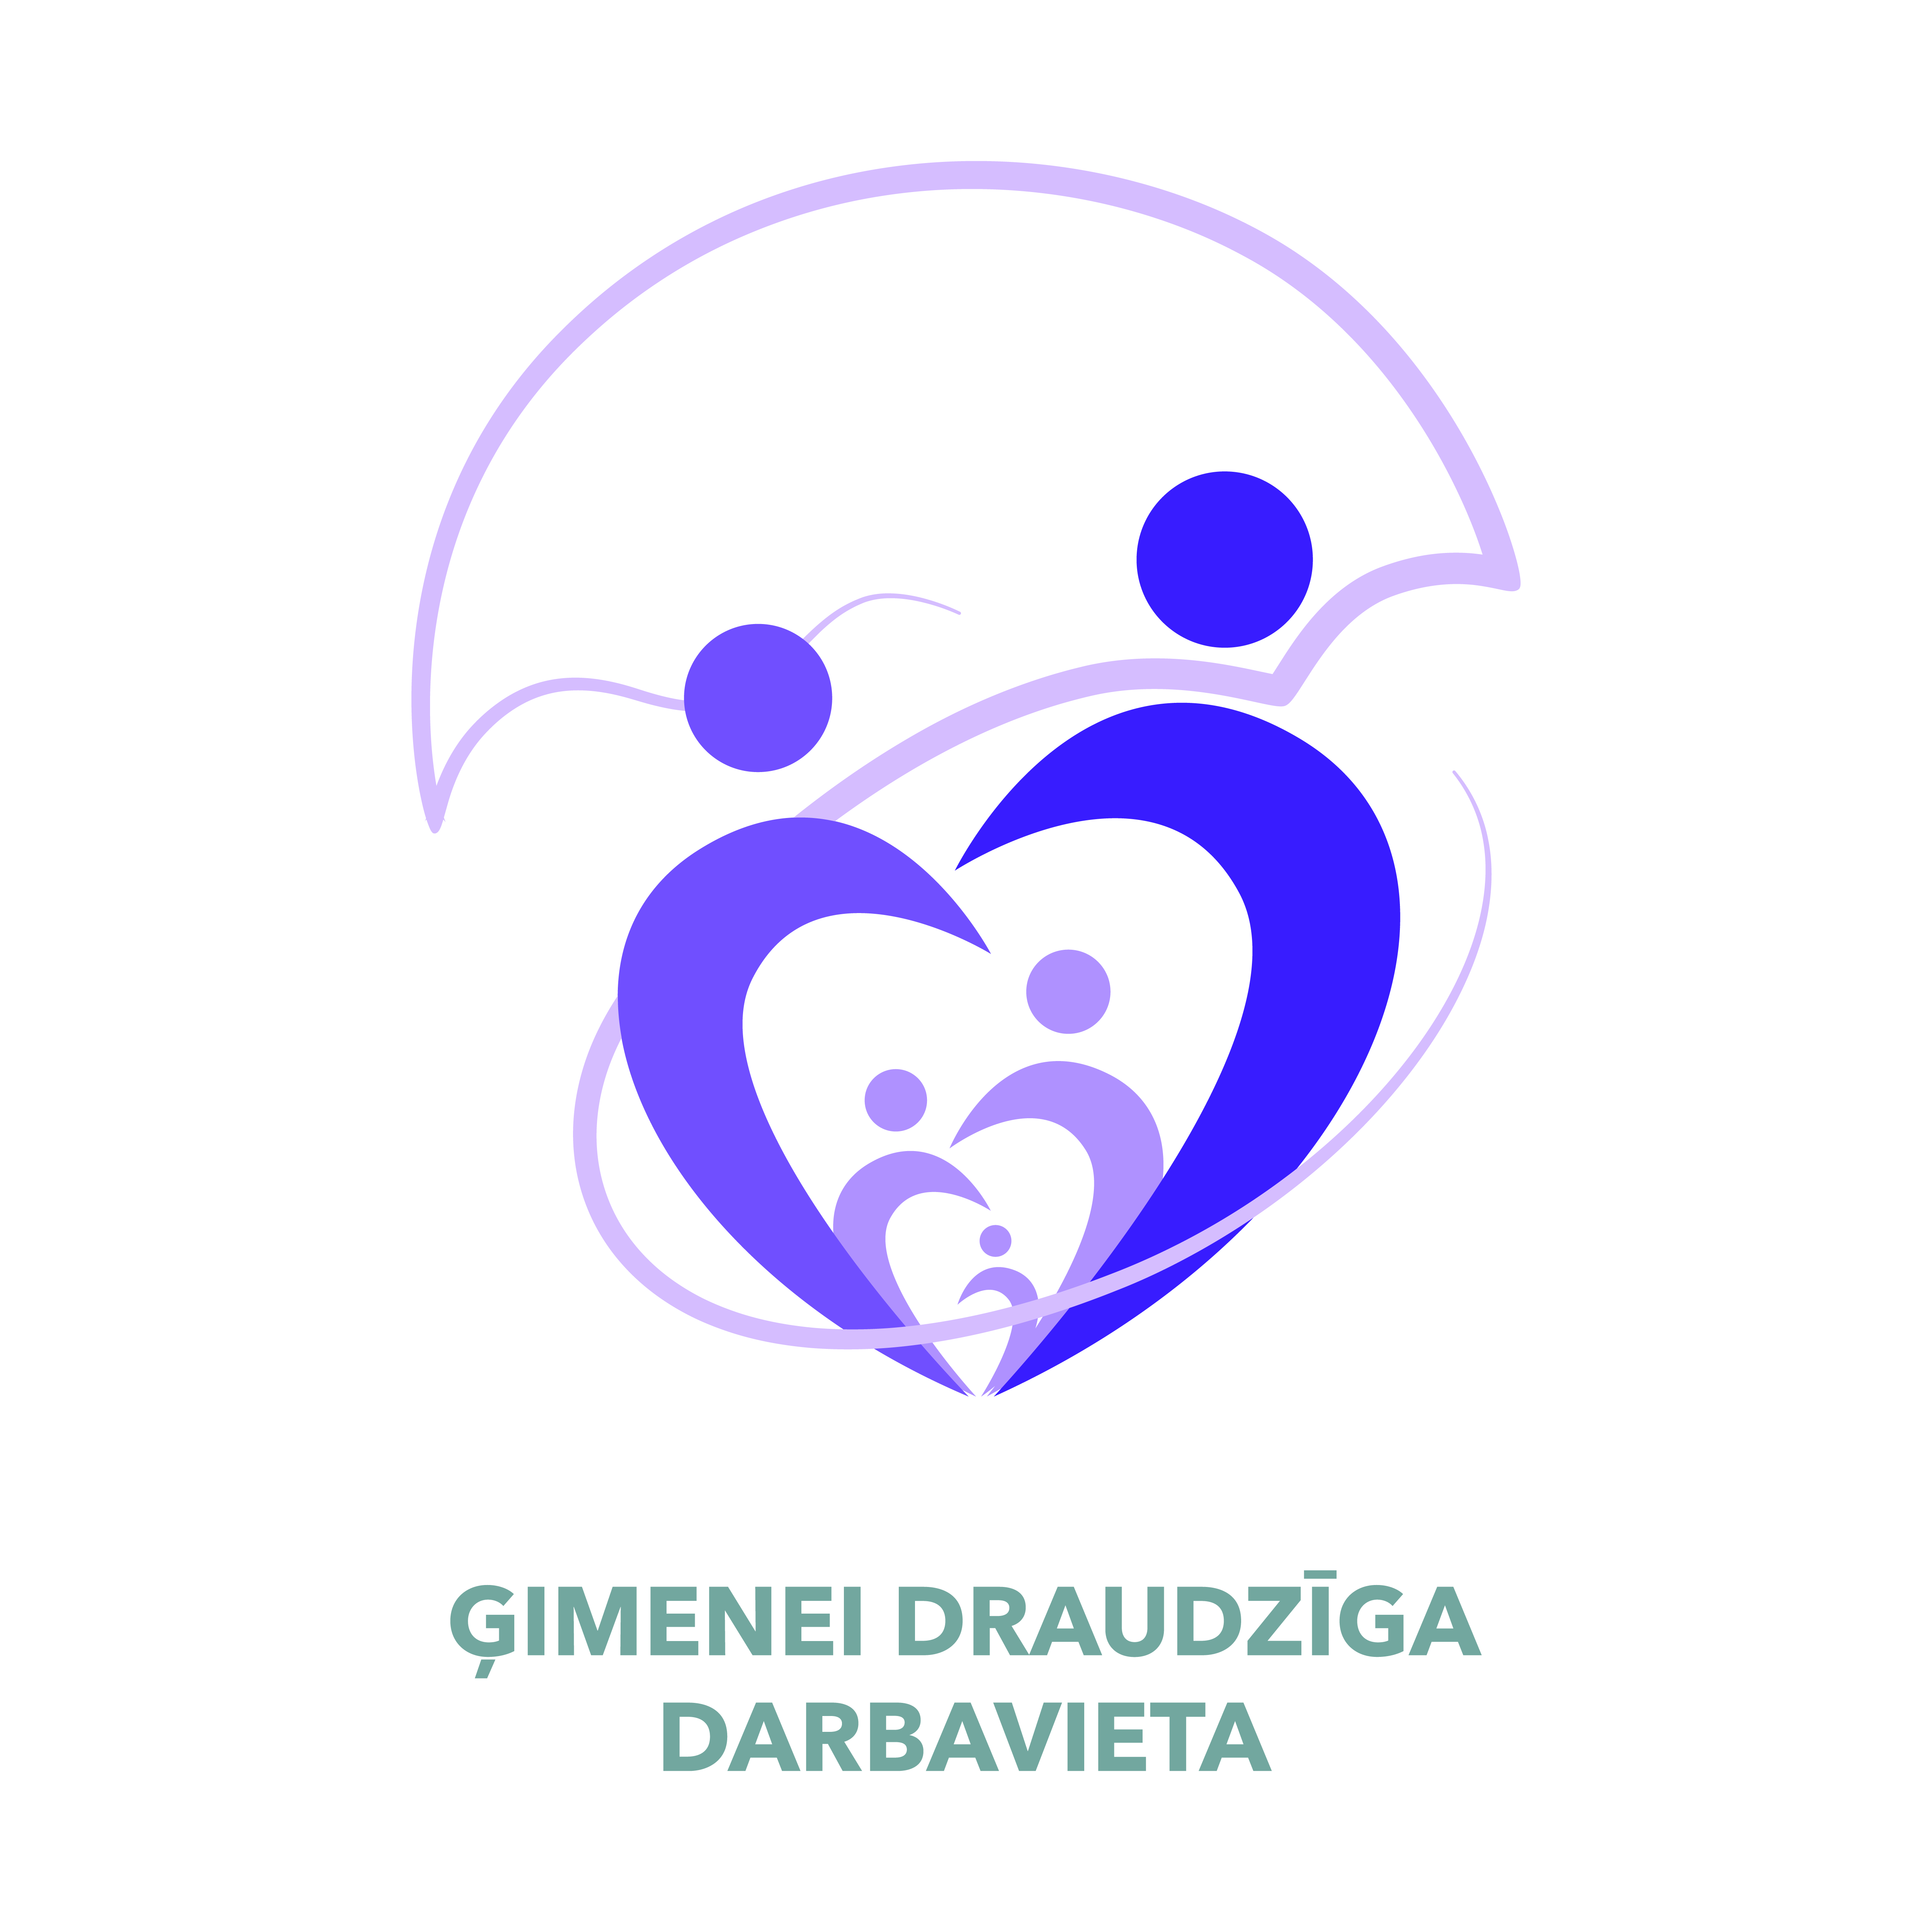 Gimenei_Draudziga_Darbavieta_Logo_2020_CMYK